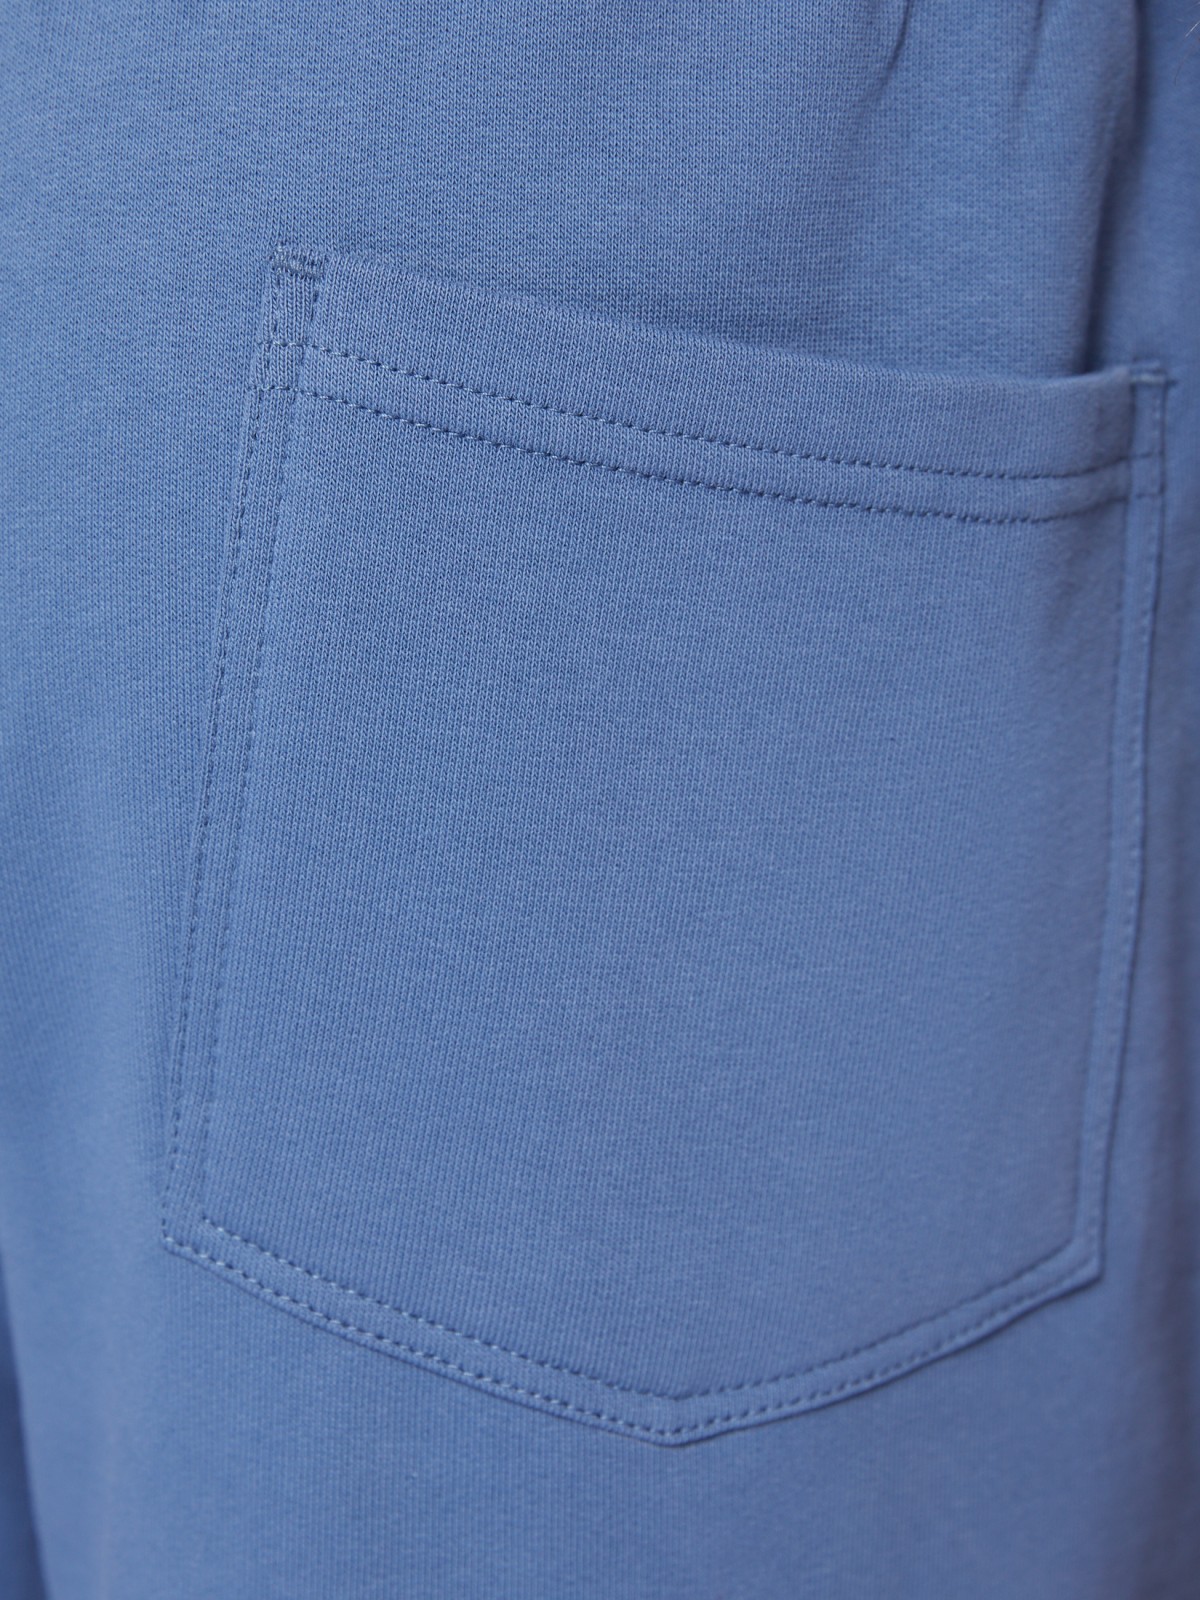 Трикотажные шорты из хлопка на резинке zolla 014237J2Q052, цвет светло-голубой, размер XS - фото 5